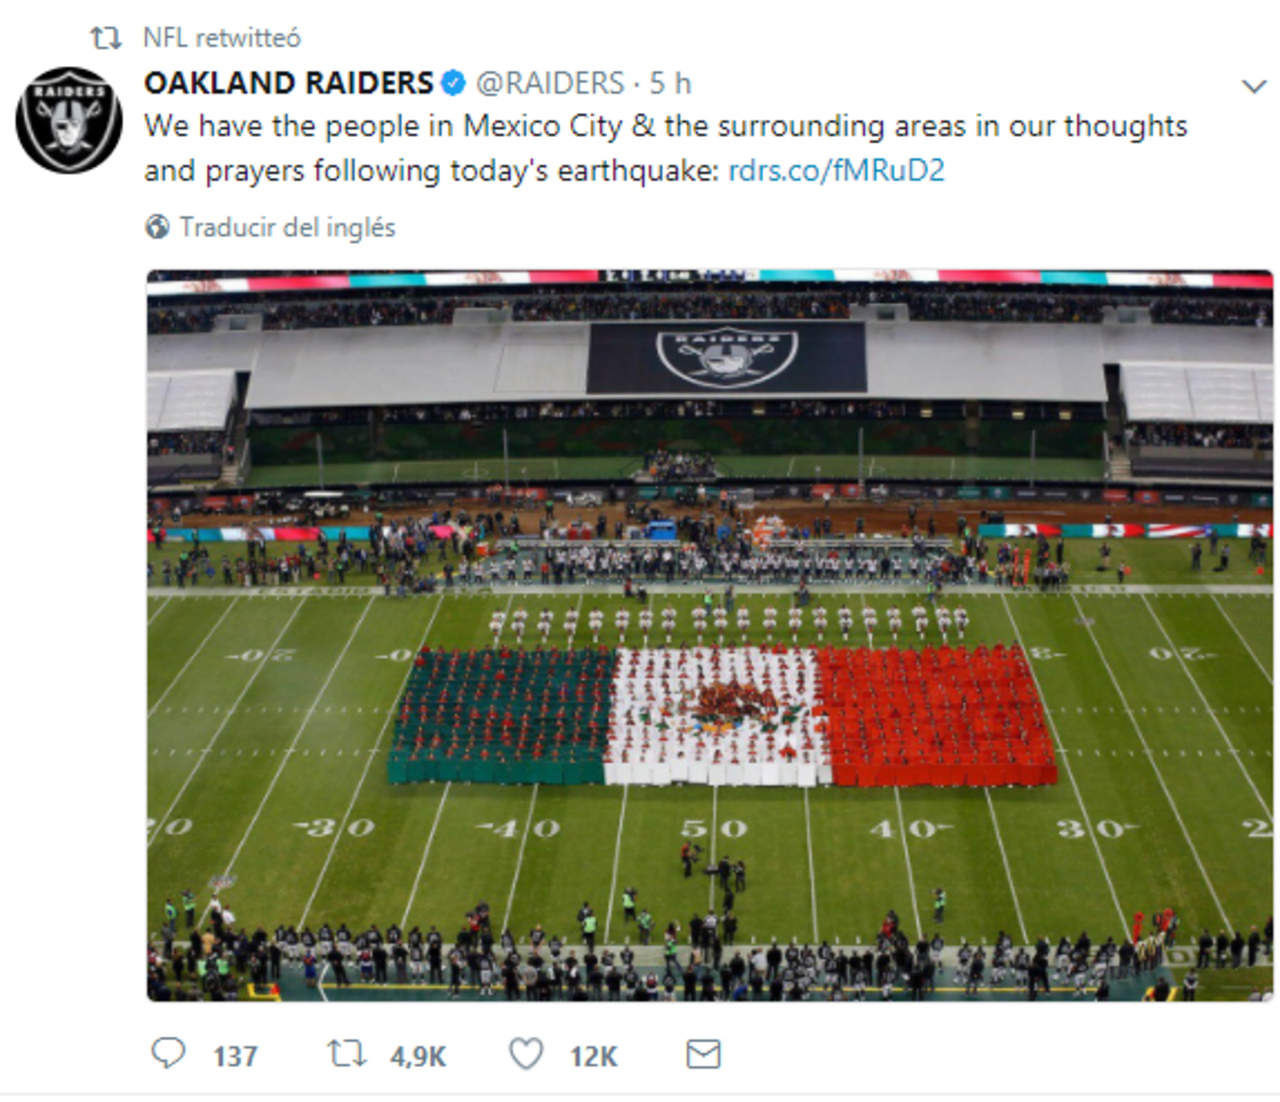 Los Raiders de Oakland mostraron su solidaridad con el pueblo mexicano afectado por el fuerte sismo del martes.